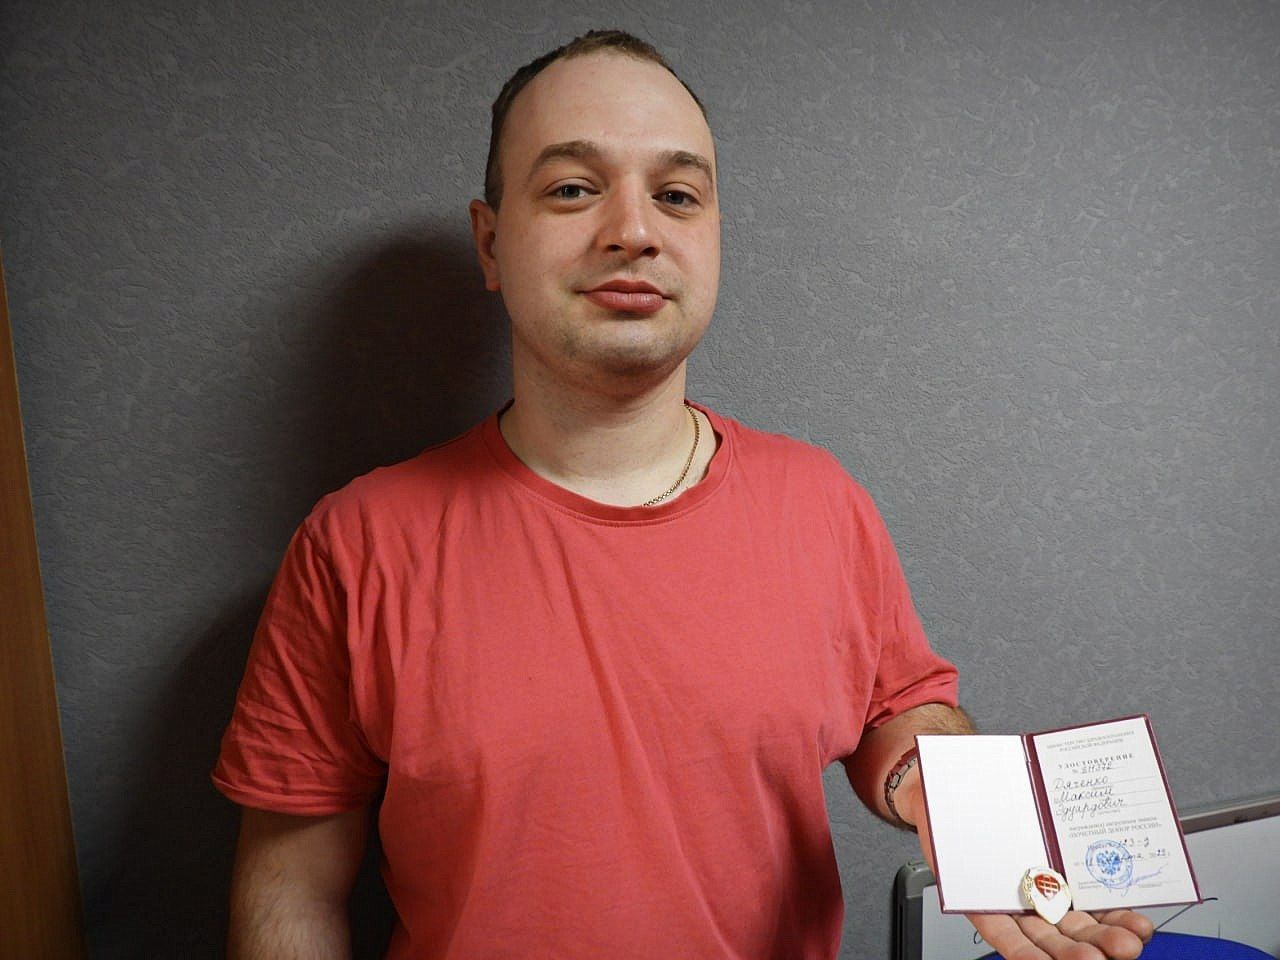 Молодой карпинец сдавал кровь 10 лет и стал Почетным донором России 